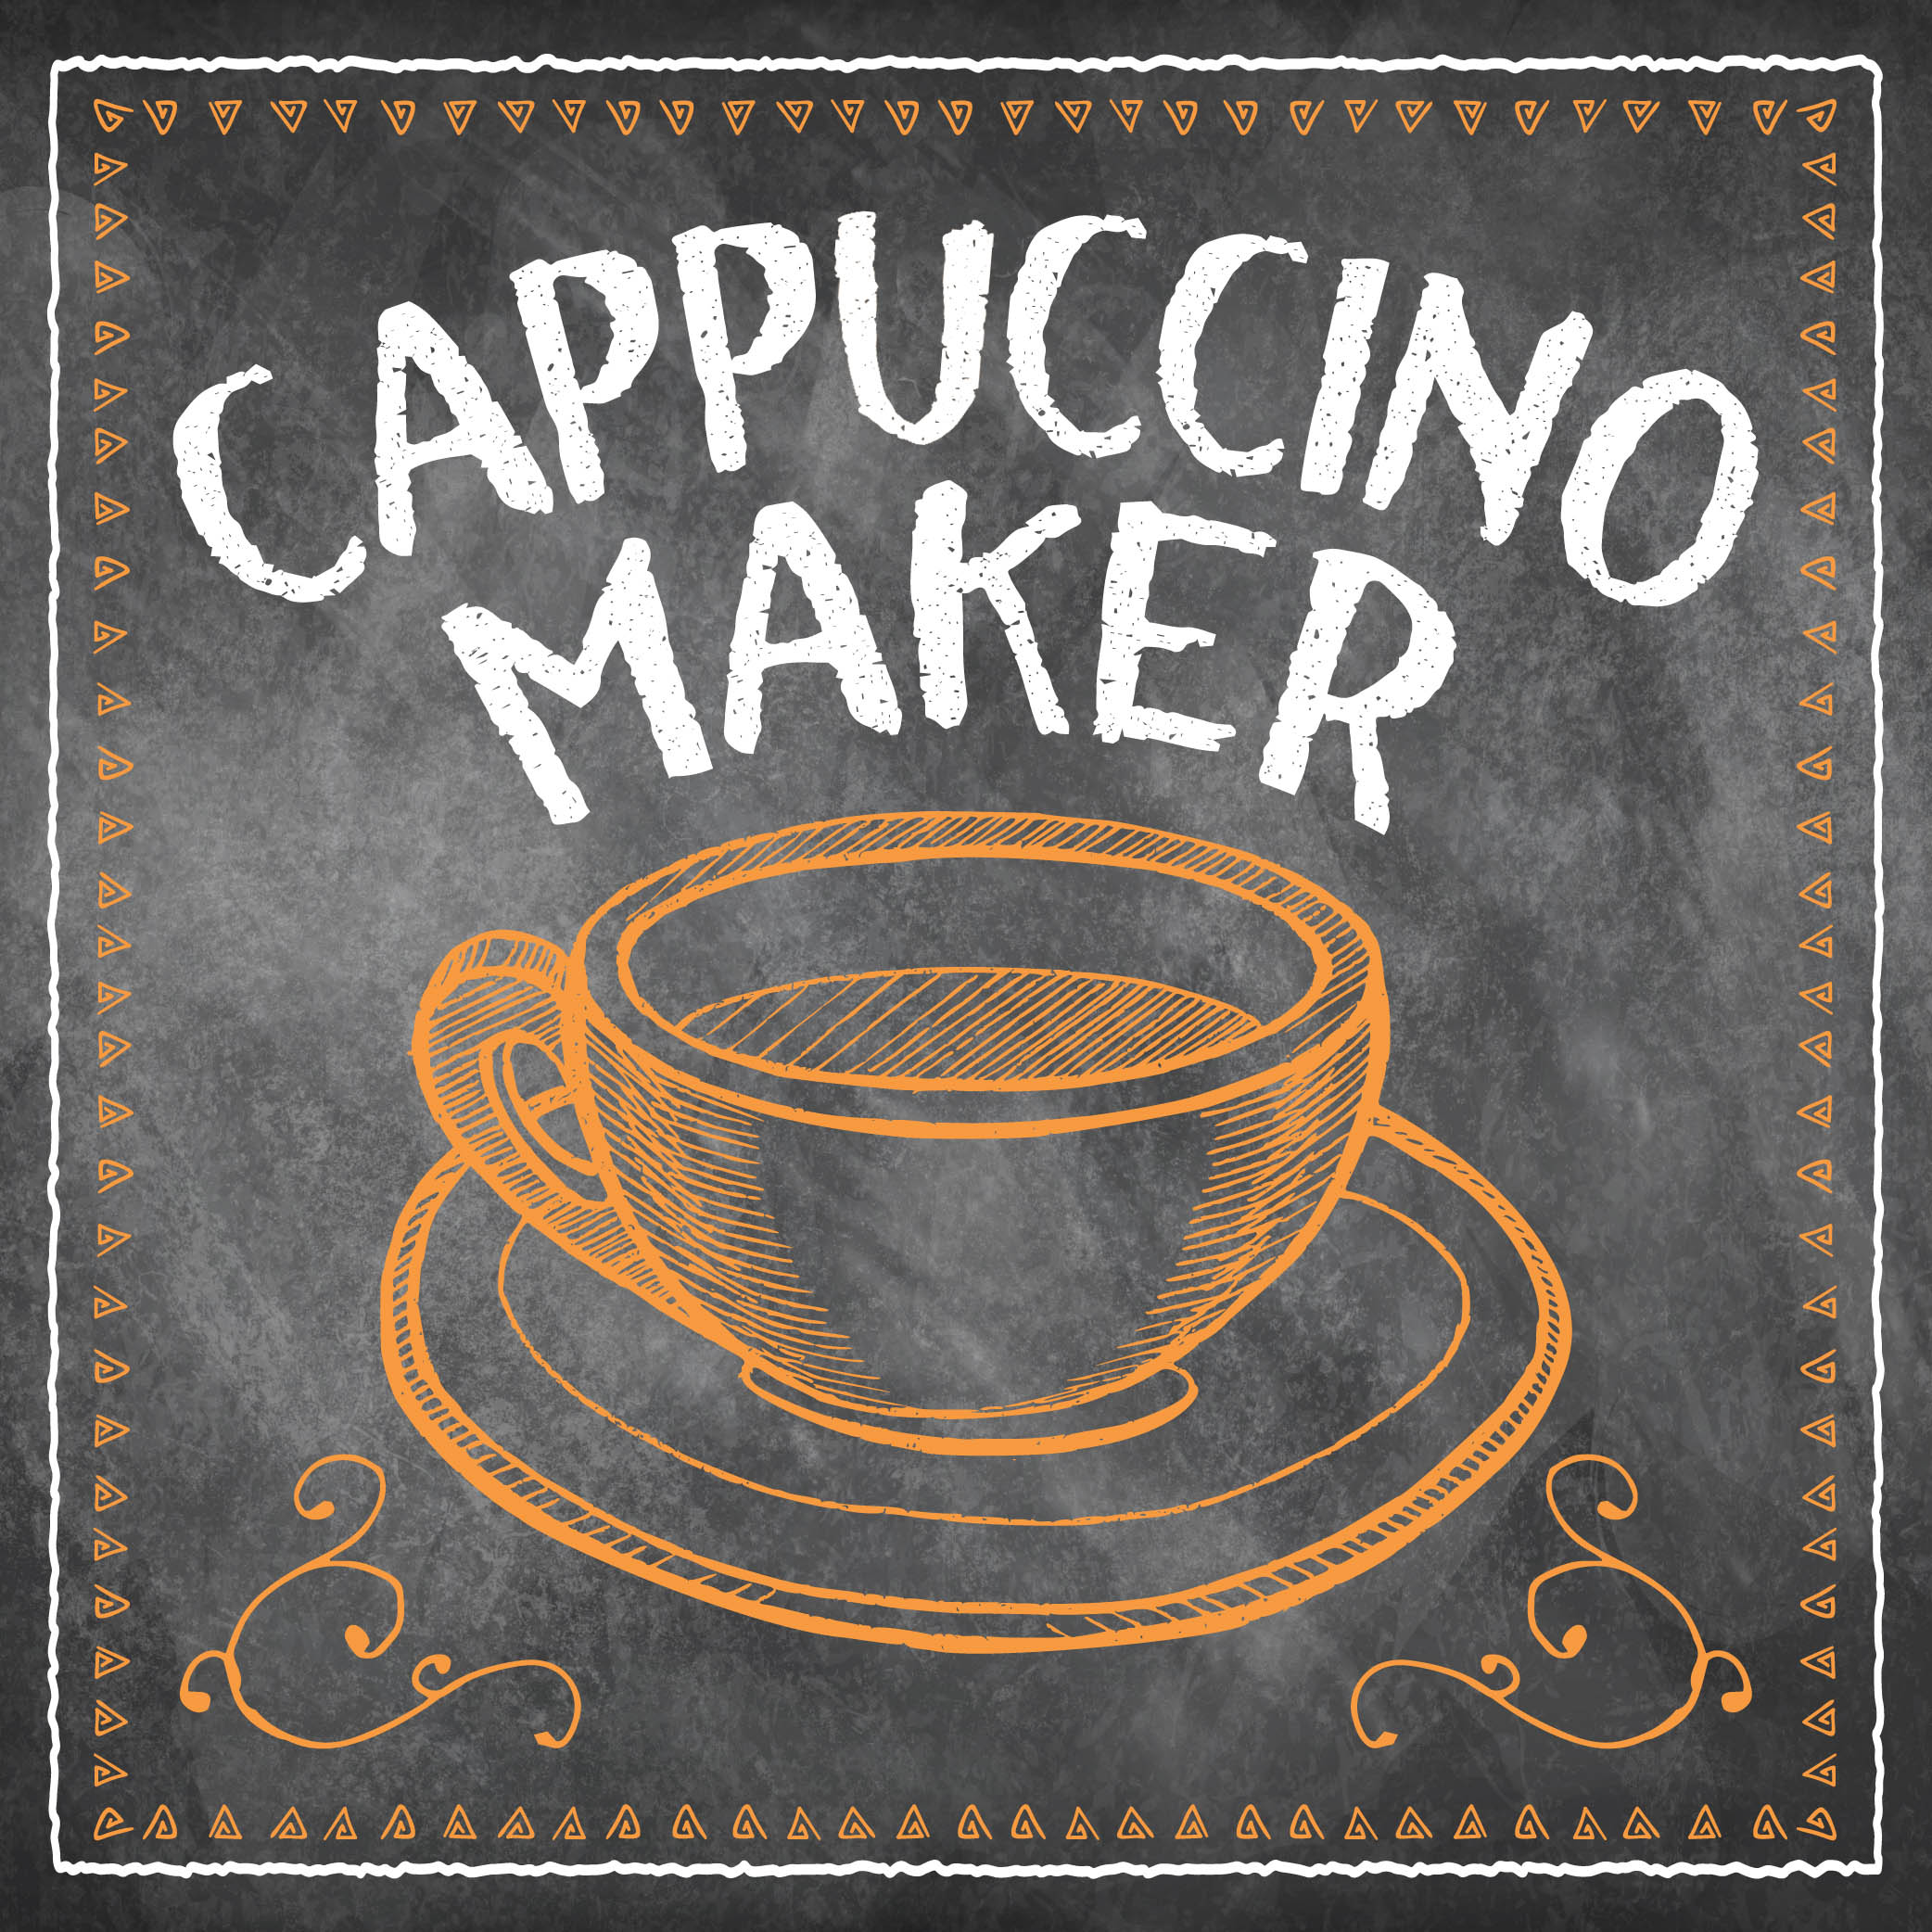 Cappuccino Maker Image